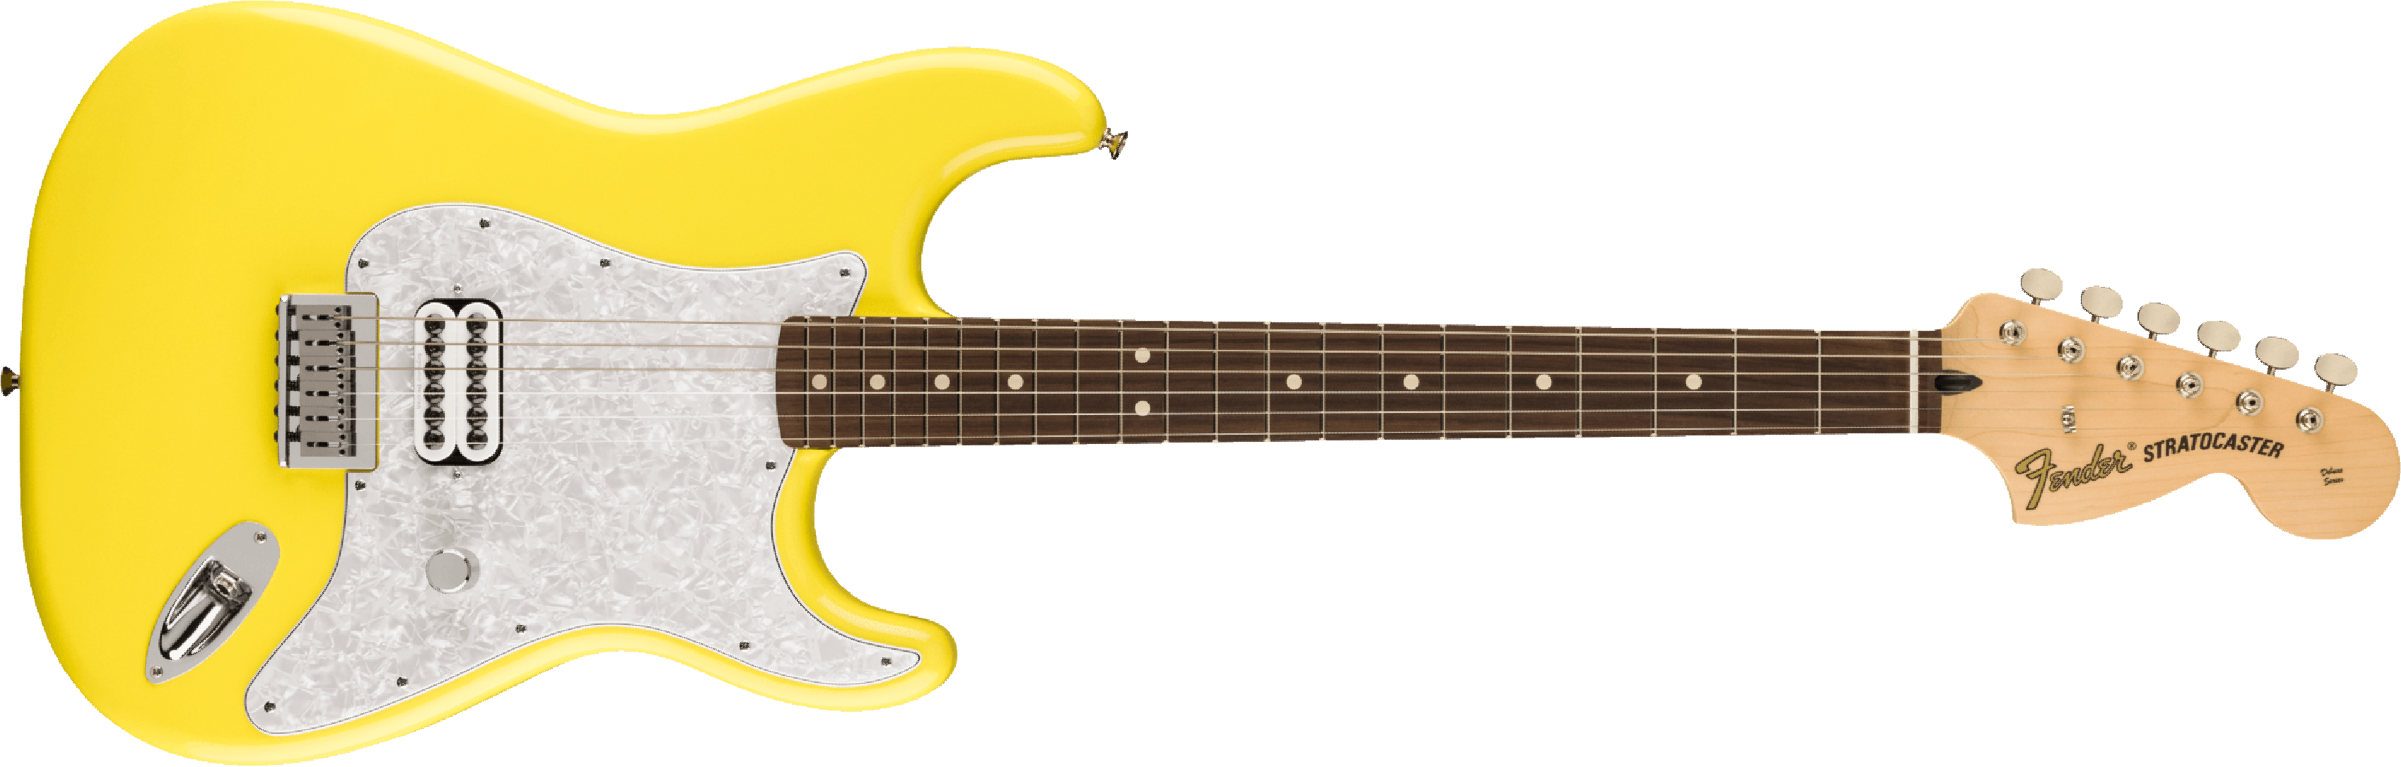 Fender Tom Delonge Ltd Mex Signature 1h Ht Rw - Graffiti Yellow - E-Gitarre in Str-Form - Main picture